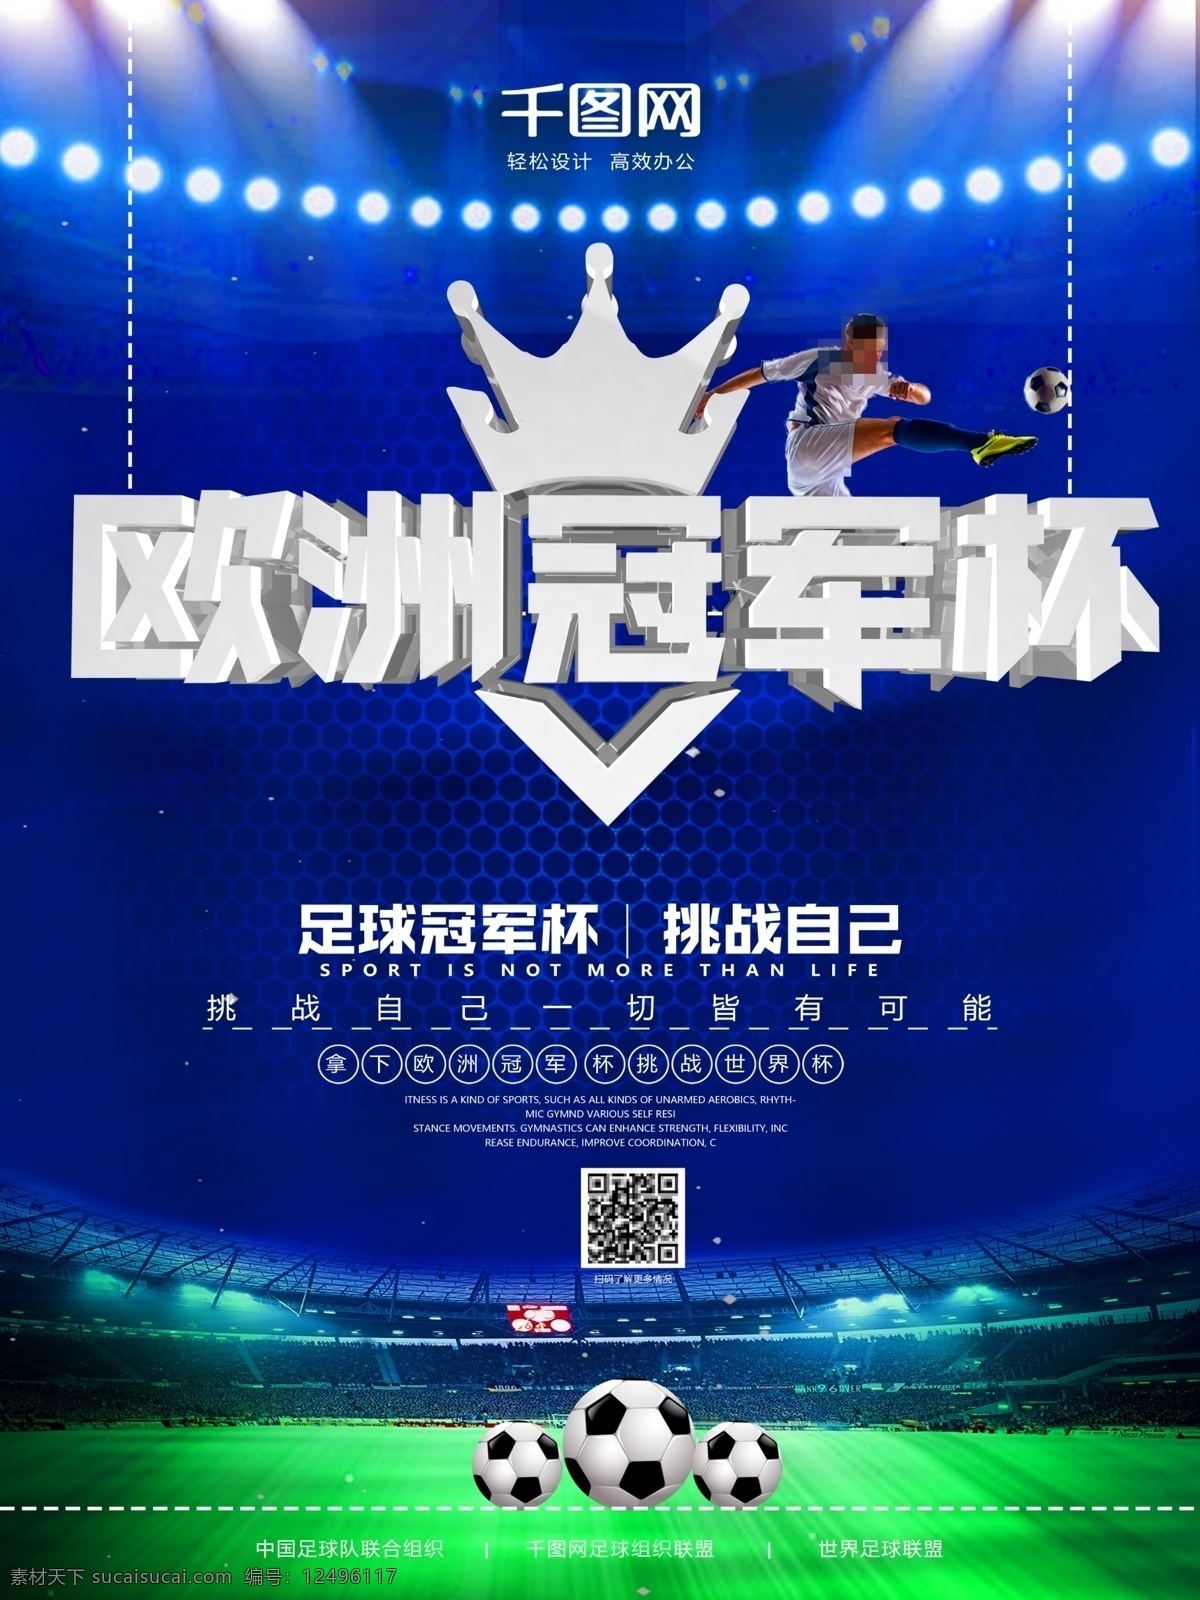 大气 欧洲 冠军杯 世界杯 足球比赛 海报 体育广告 足球创意 足球俱乐部 足球赛 足球培训